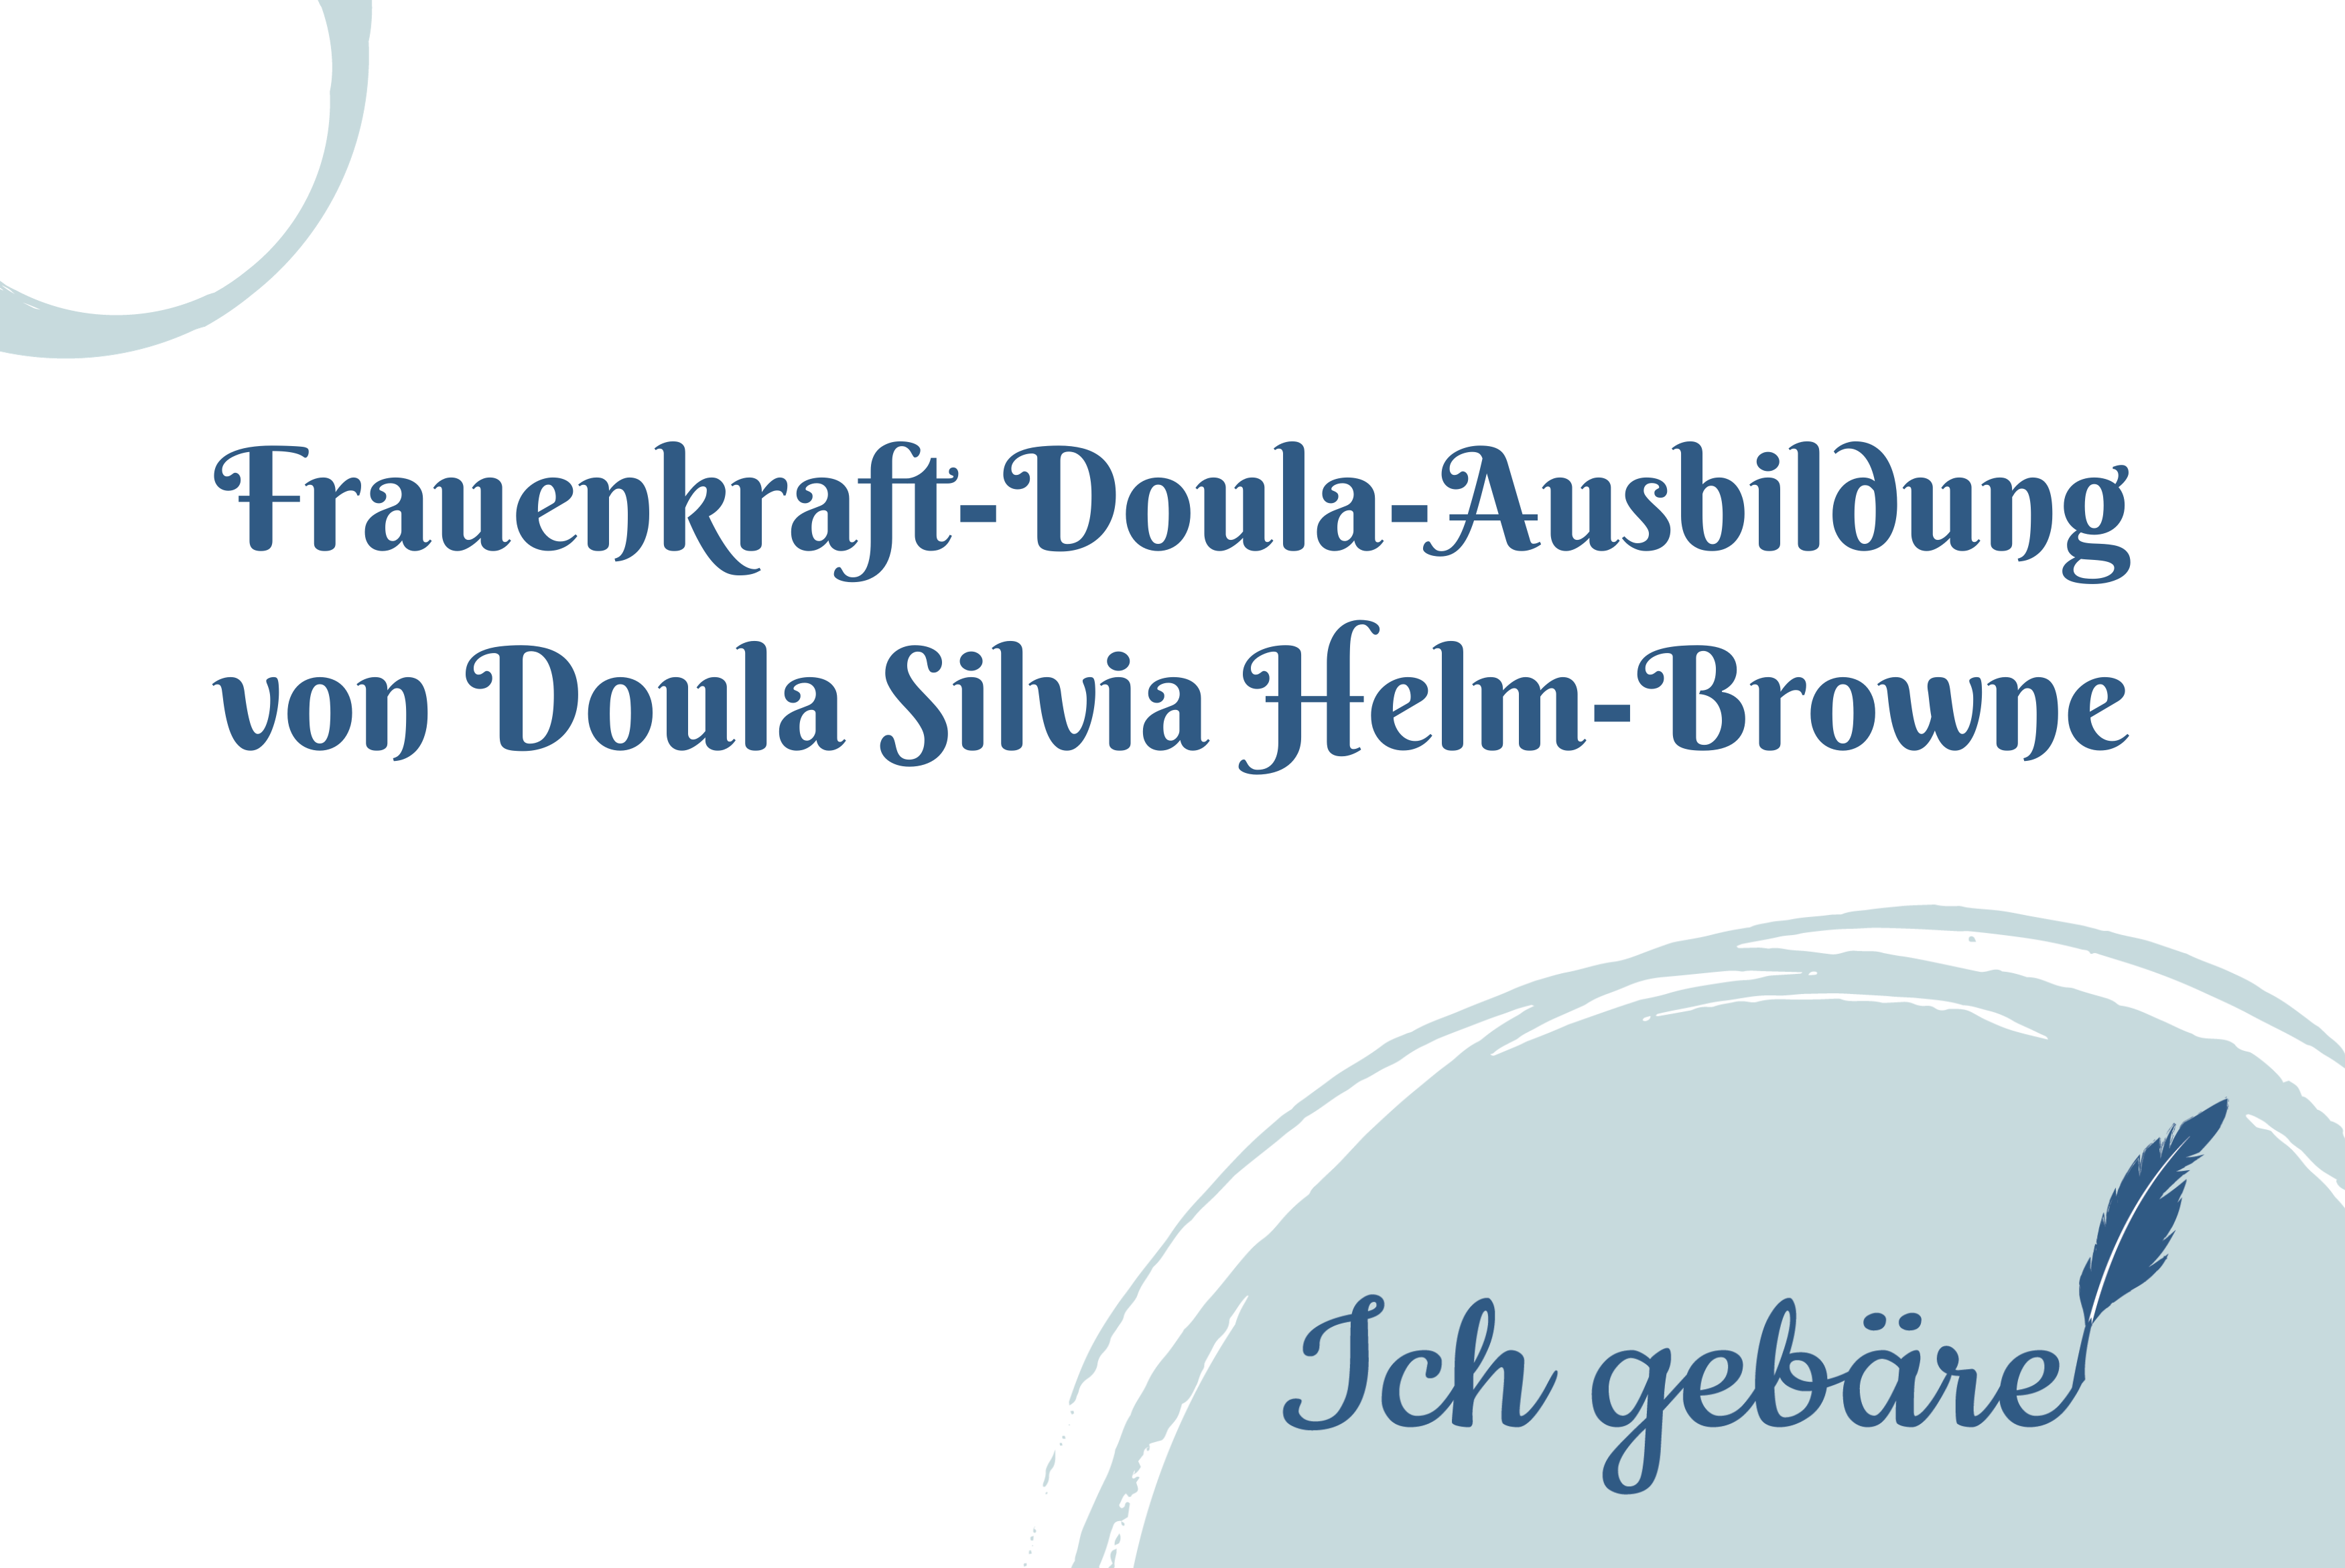 Titelbild: Frauenkraft-Doula-Ausbildung von Doula Silvia Helm-Browne